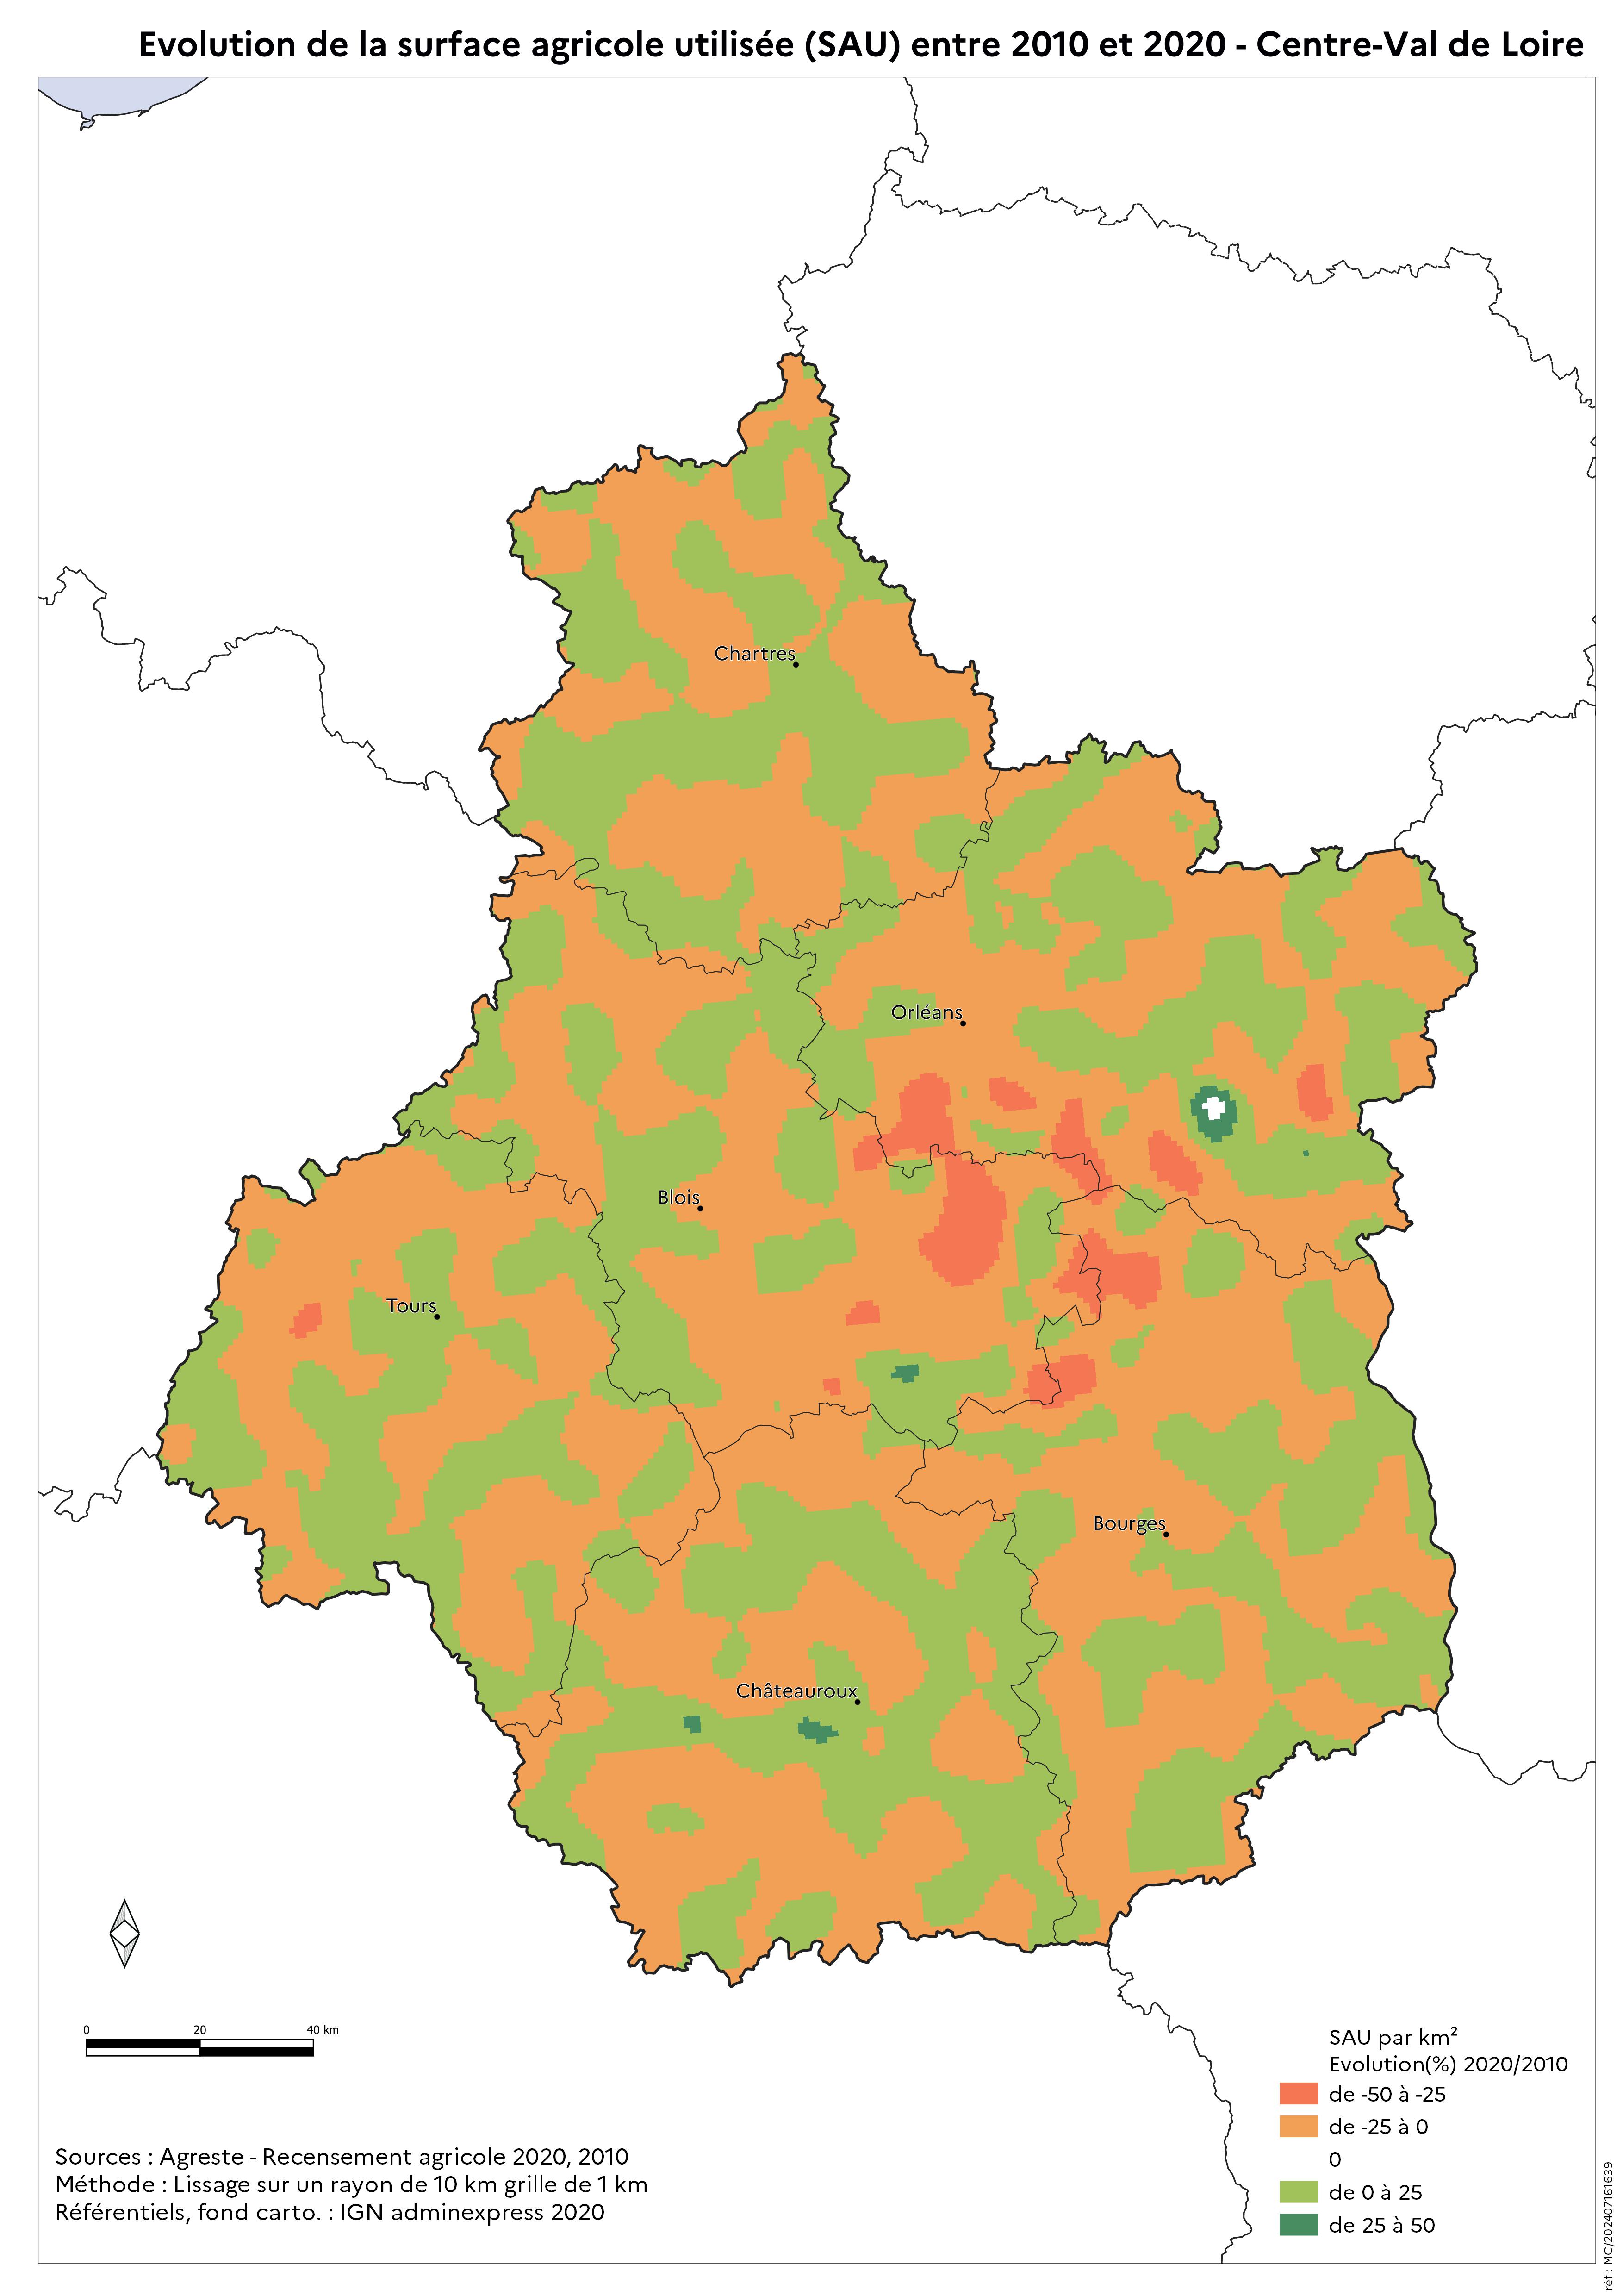 Image 2 : Évolution de la surface agricole utilisée (SAU) entre 2010 et 2020 - Centre-Val de Loire